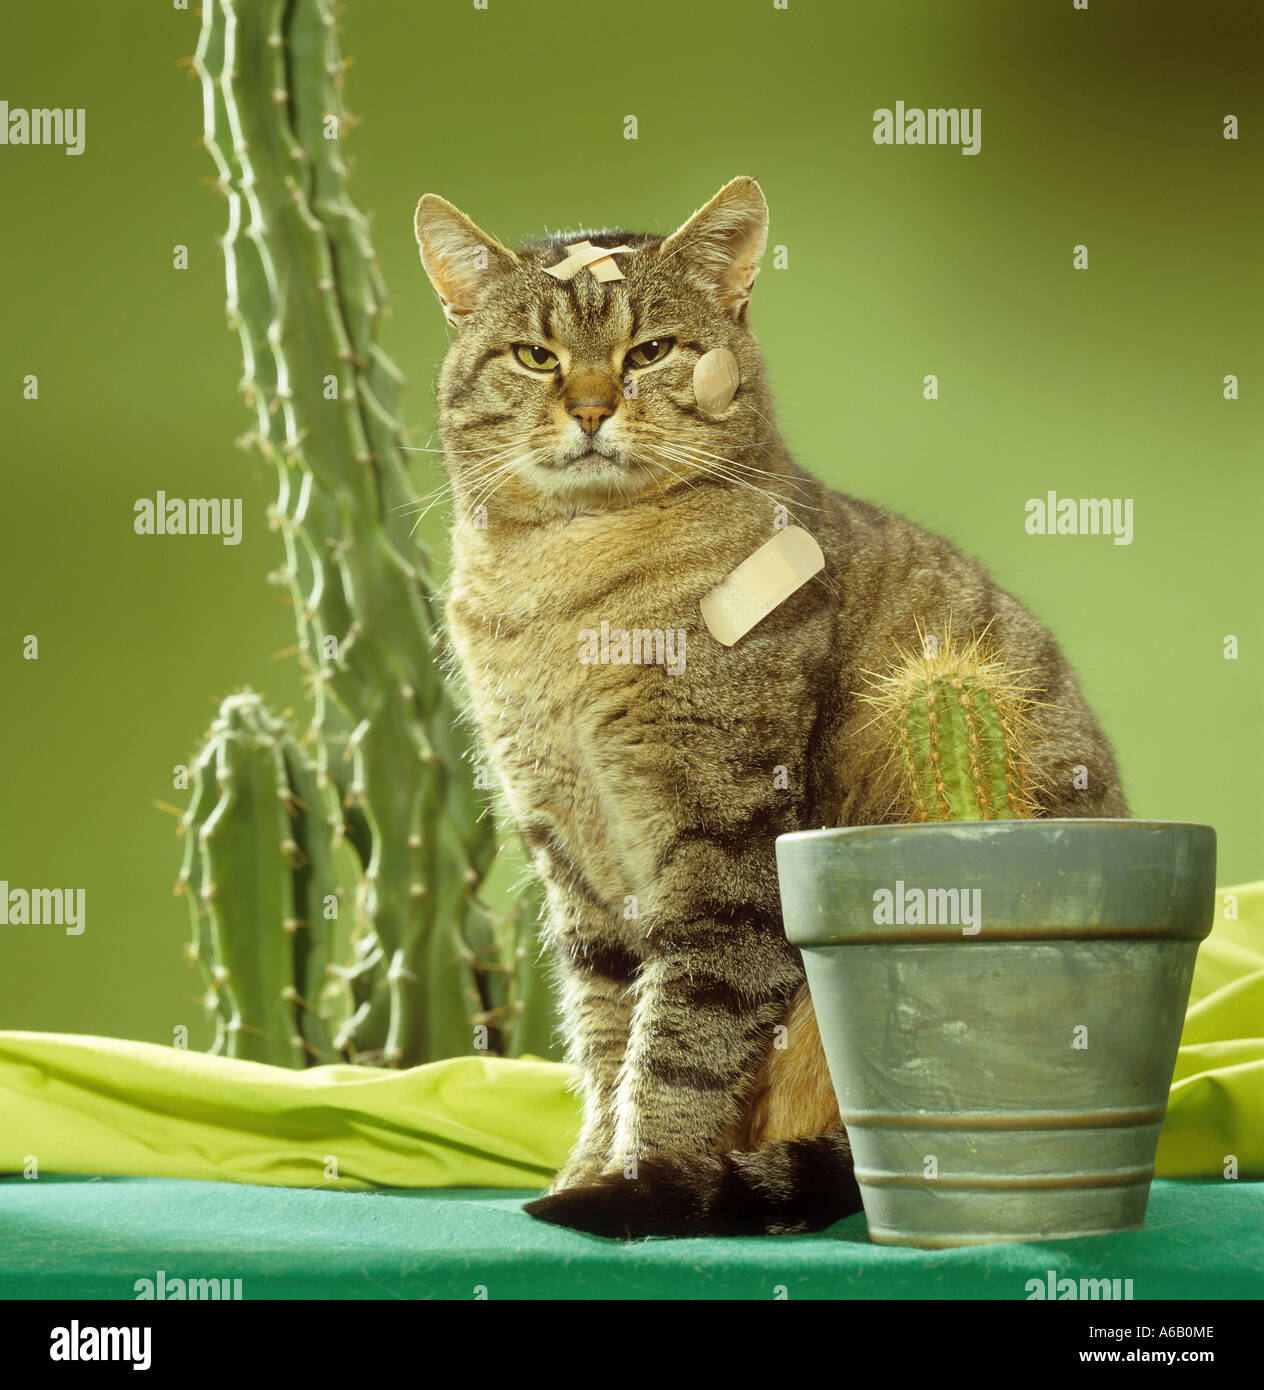 Un chat avec des pansements adhésifs se trouve à côté des cactus Banque D'Images